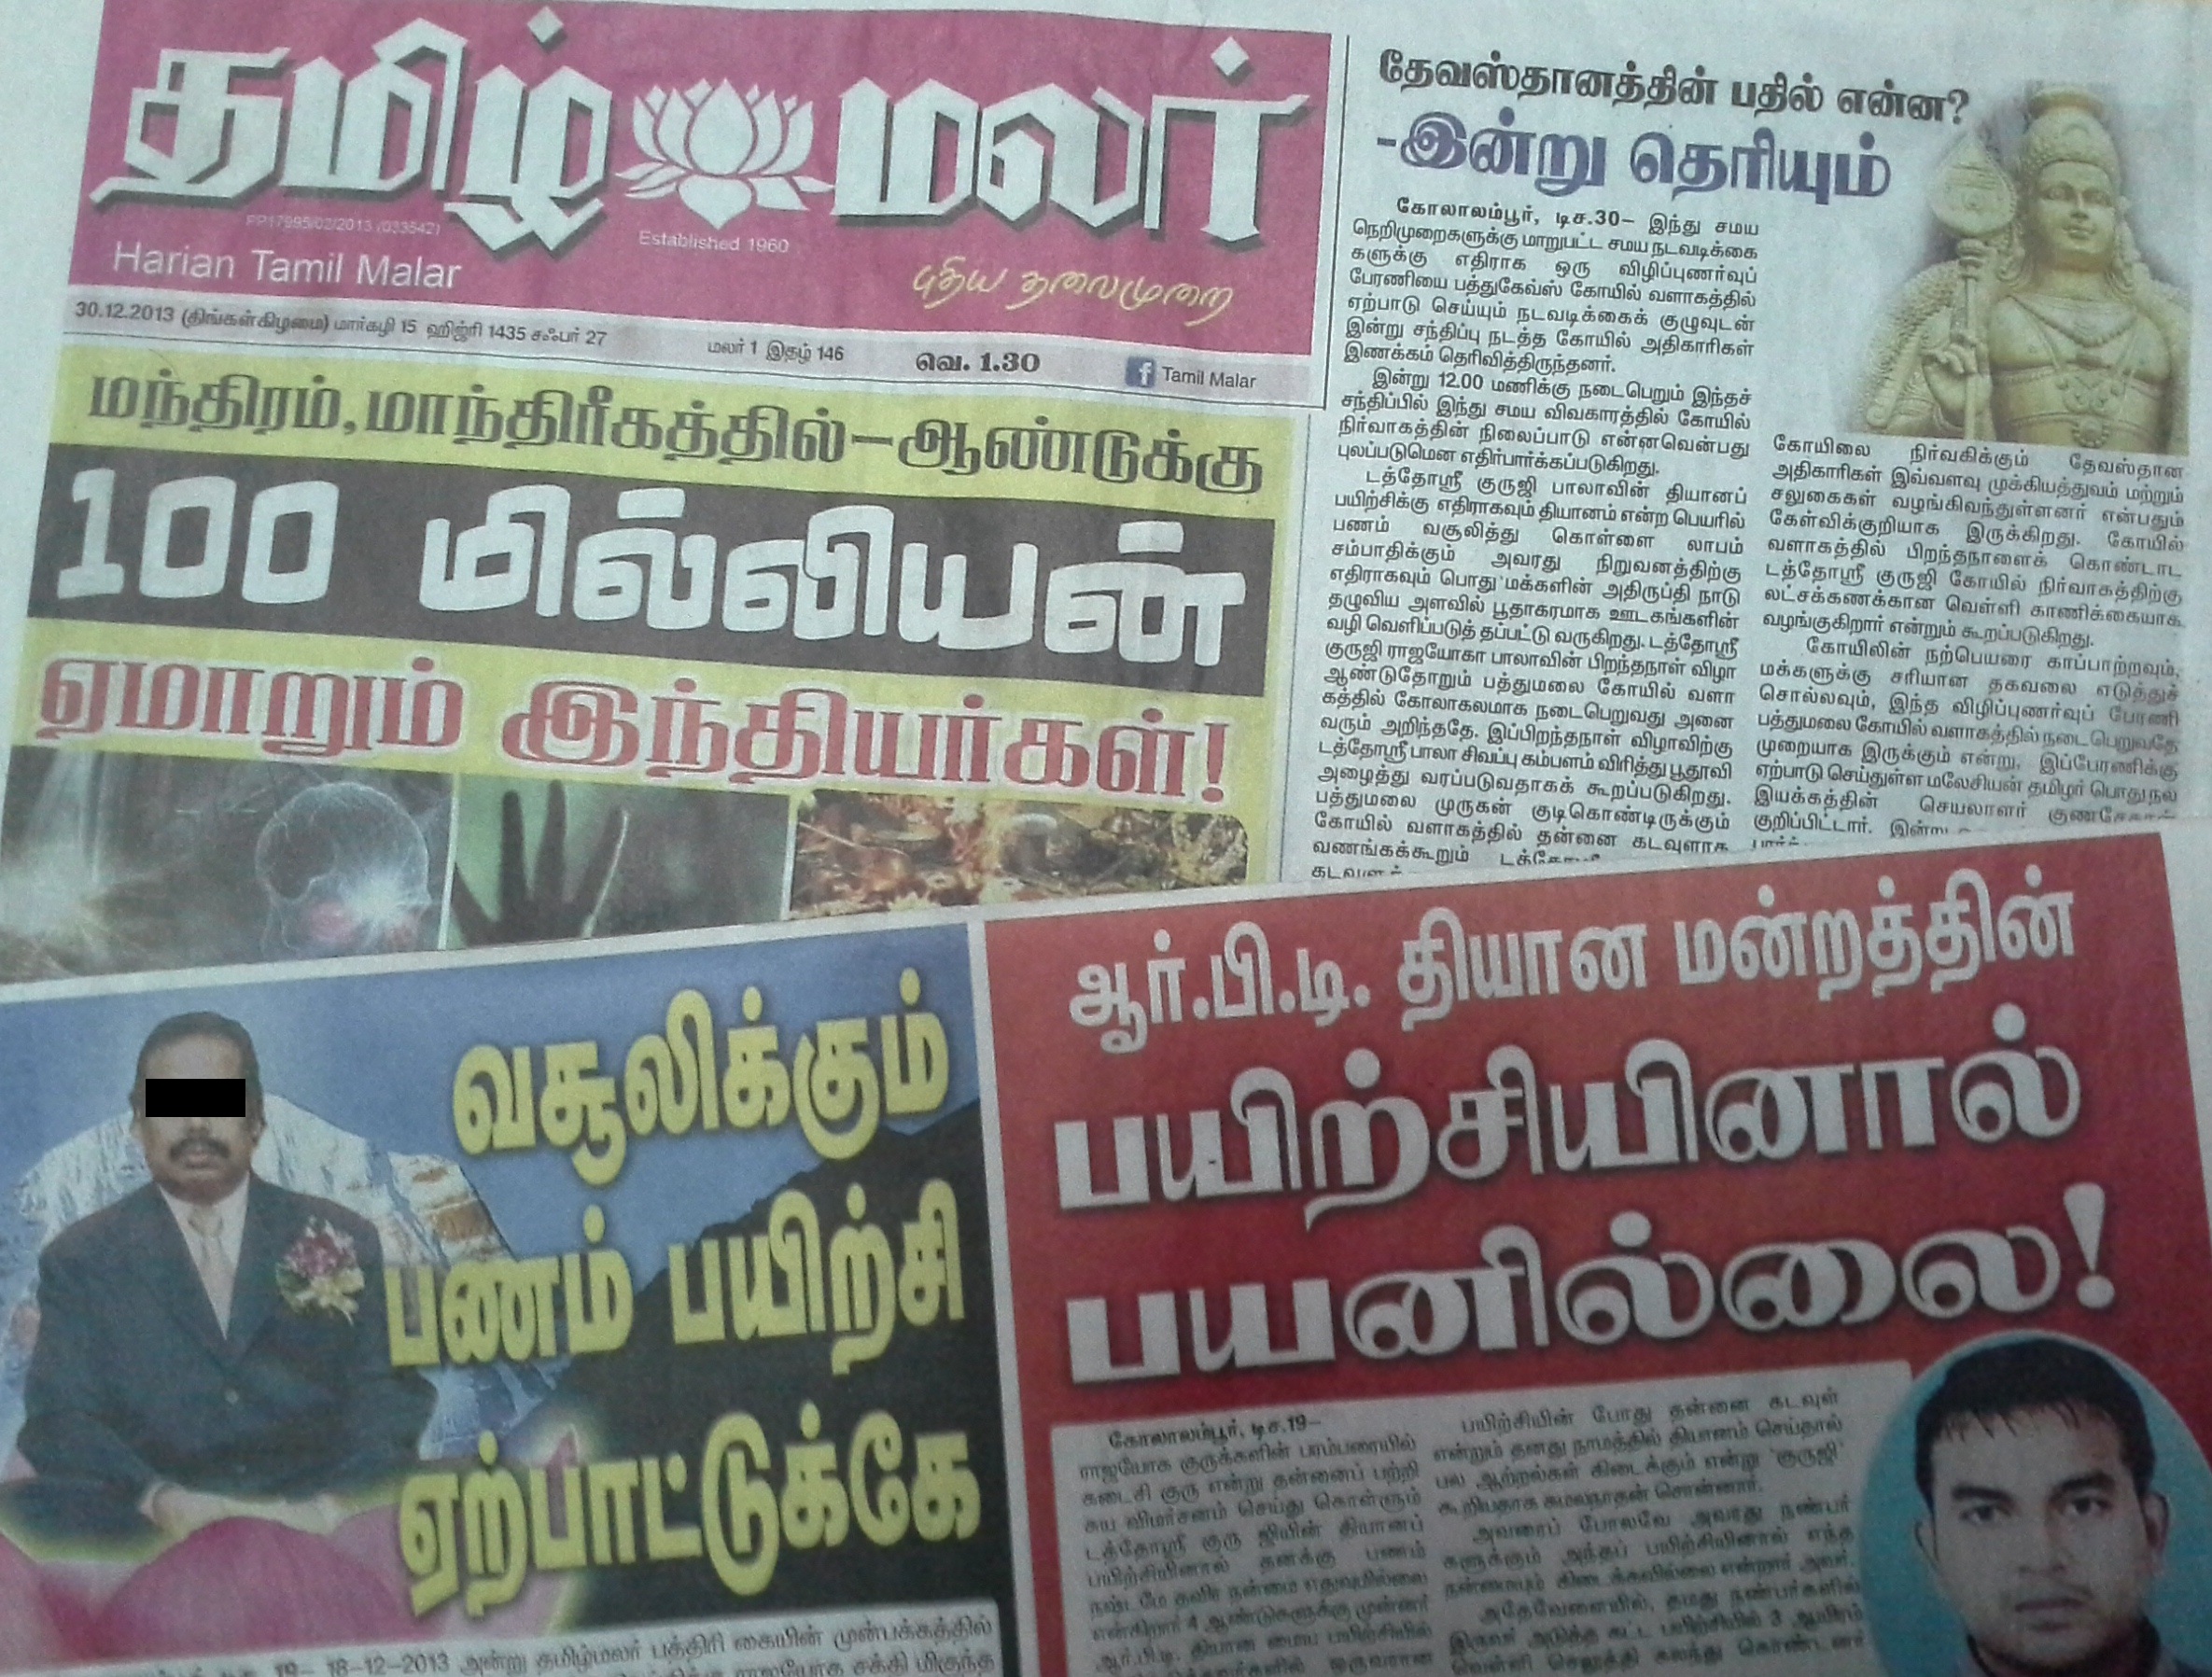 Hanya Tamil Malar menyiarkan siri berita mengenai beberapa guruji.